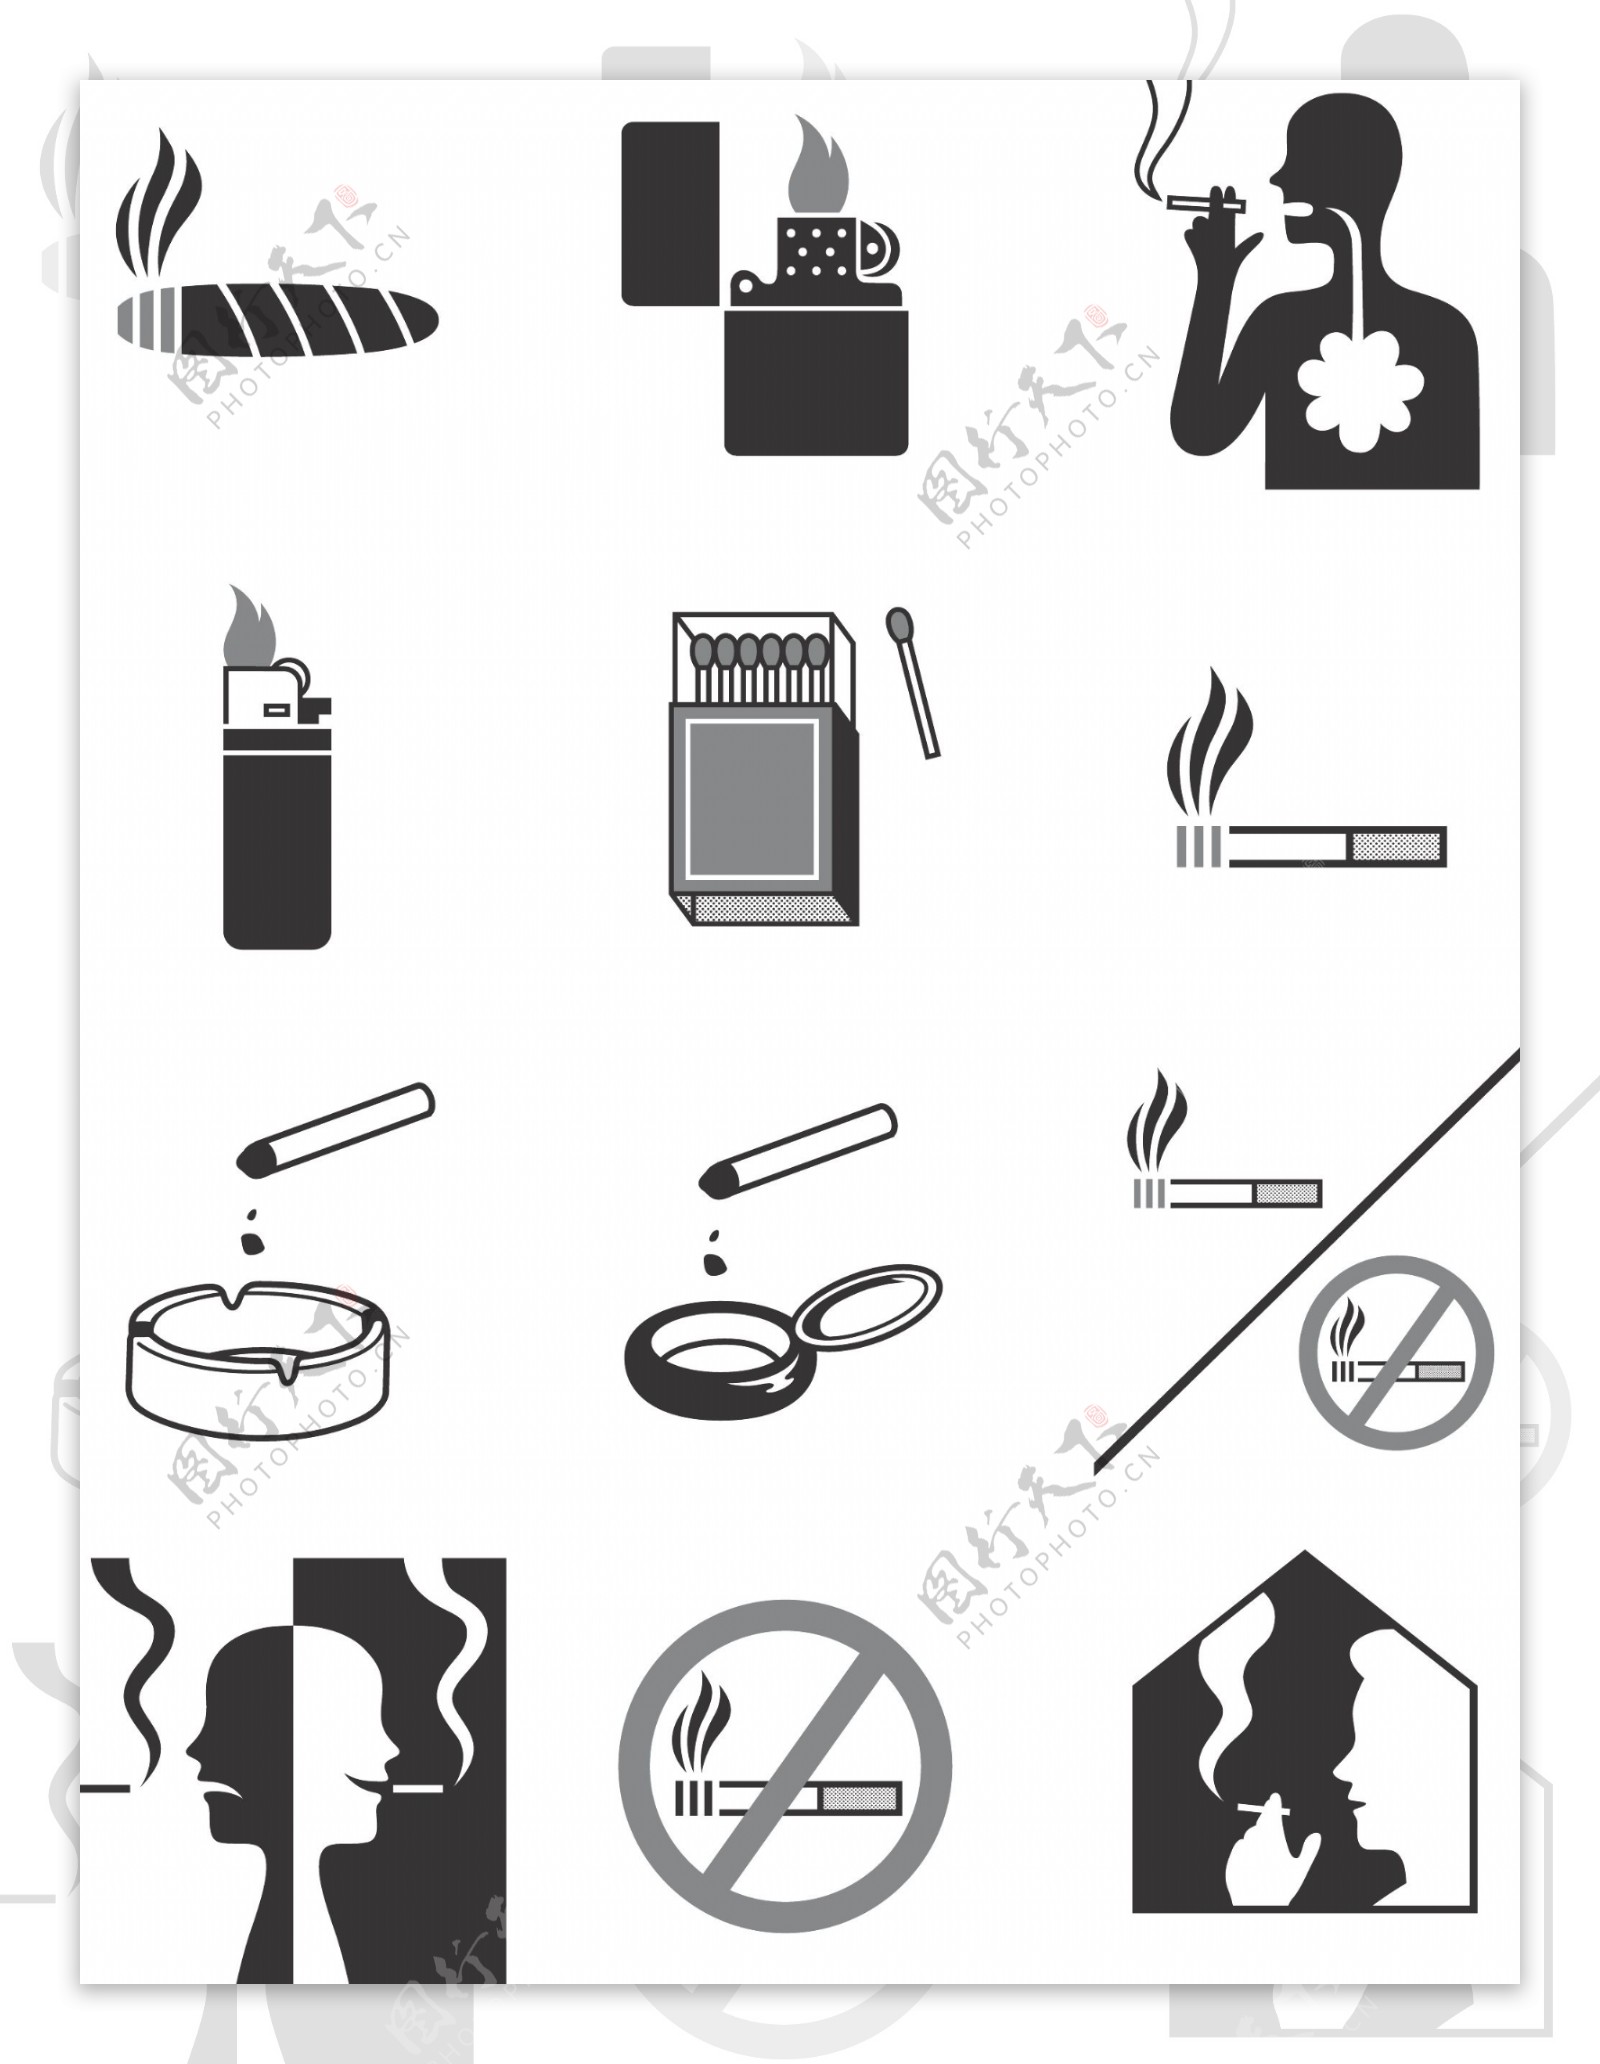 禁止吸烟图片素材-正版创意图片500436370-摄图网